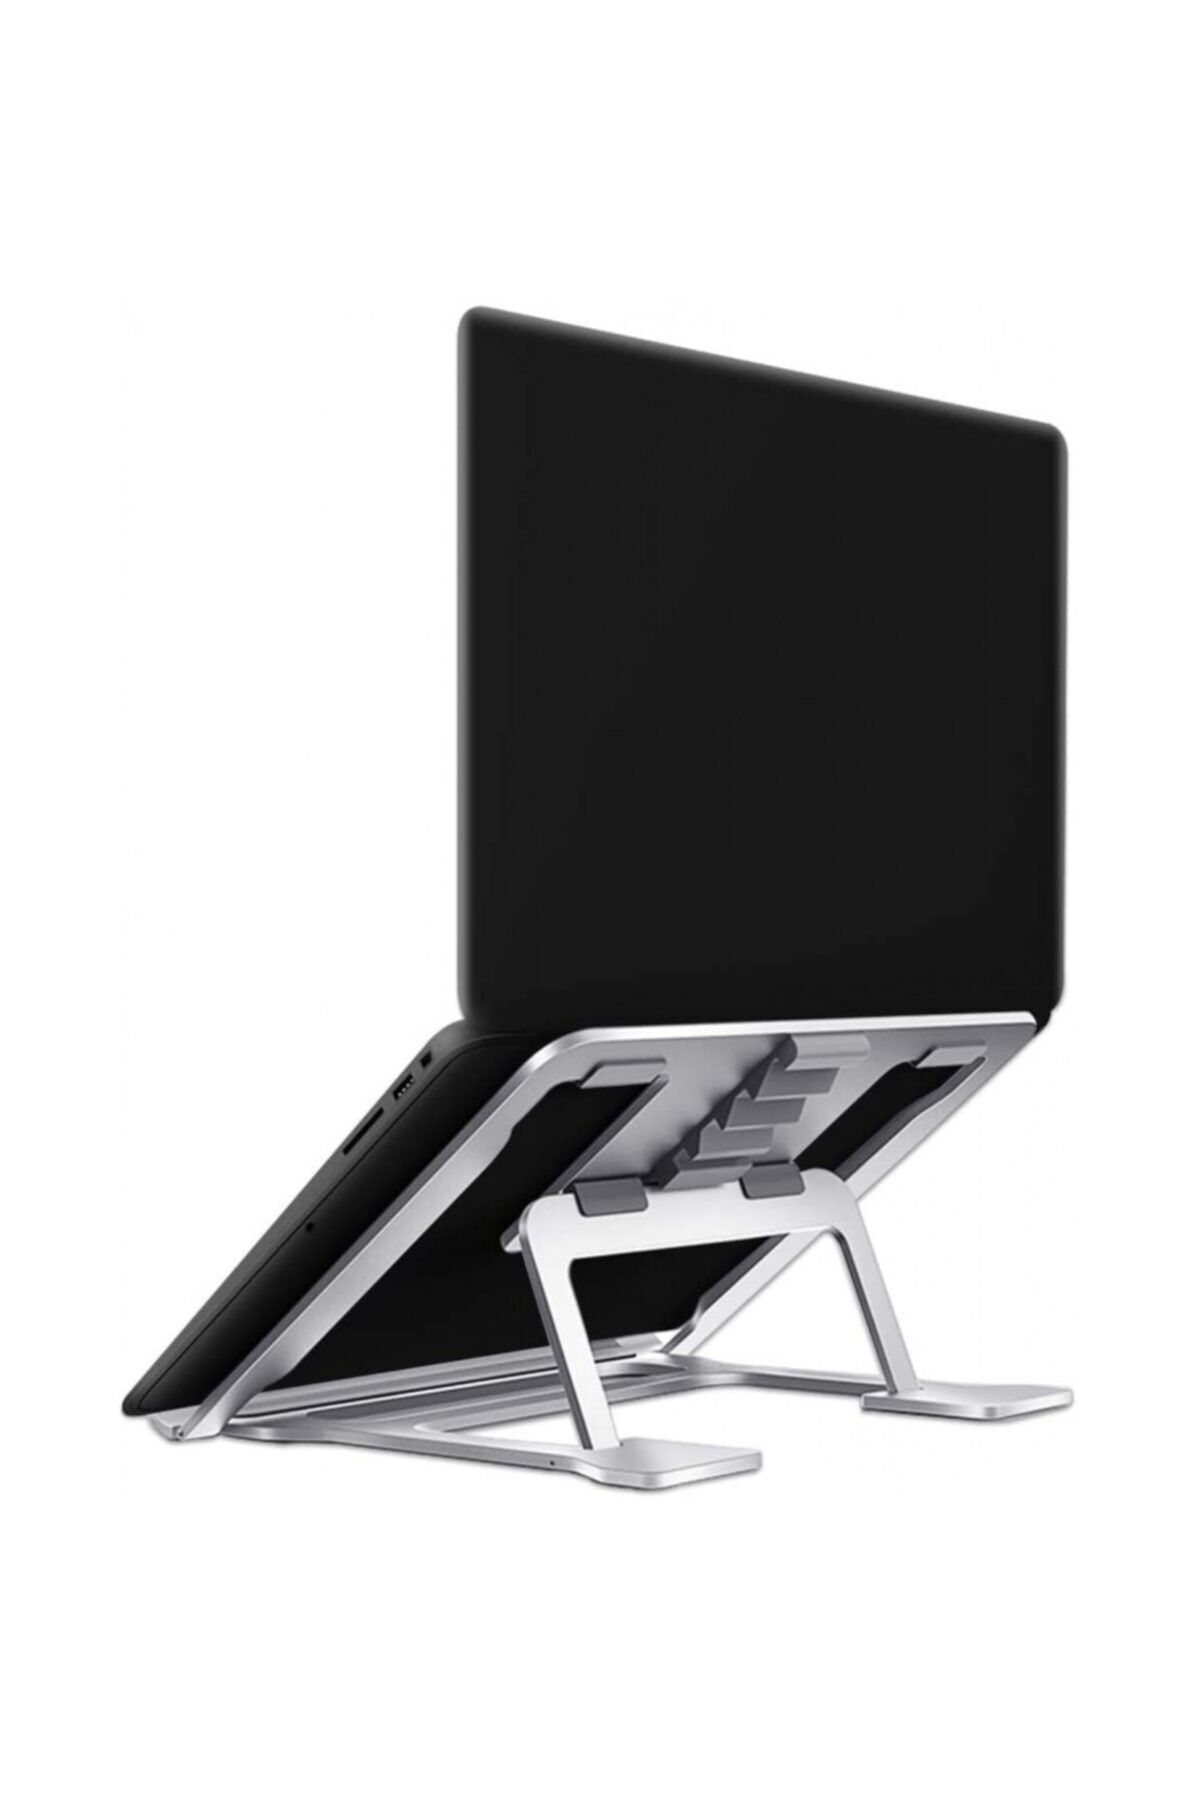 Hobimtek Masa Için Ayarlanabilir Dizüstü Bilgisayar Standı 11-16 Inch Laptop Standı